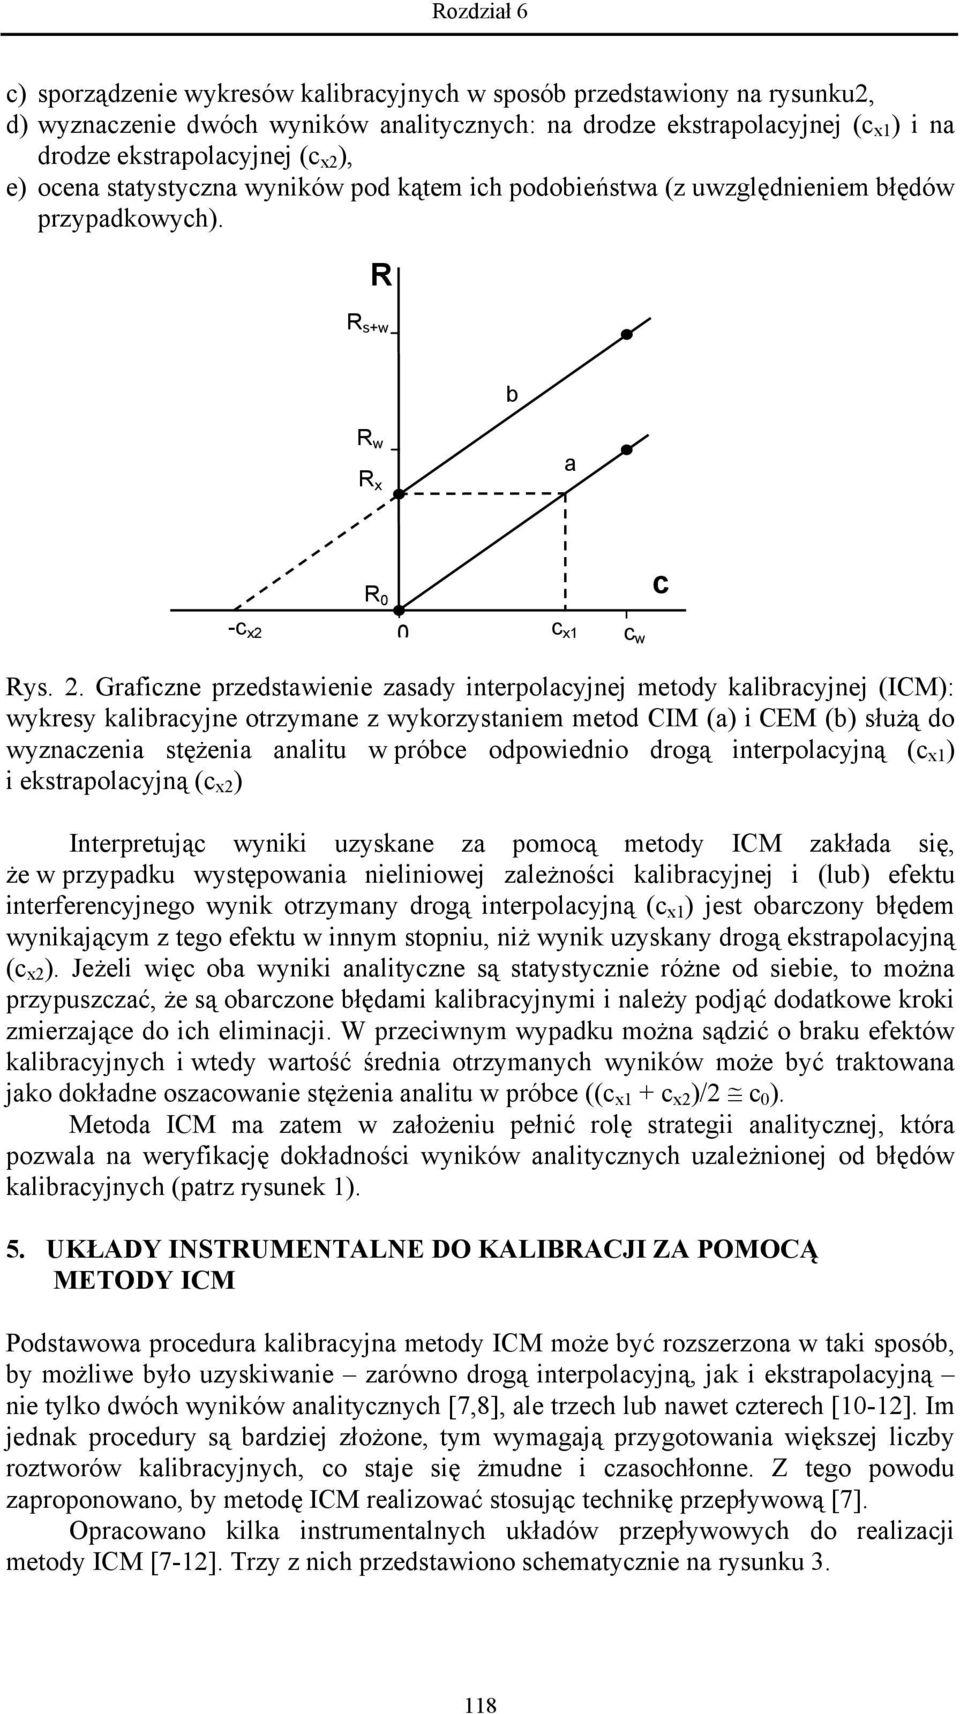 Graficzne przedstawienie zasady interpolacyjnej metody kalibracyjnej (ICM): wykresy kalibracyjne otrzymane z wykorzystaniem metod CIM (a) i CEM (b) służą do wyznaczenia stężenia analitu w próbce